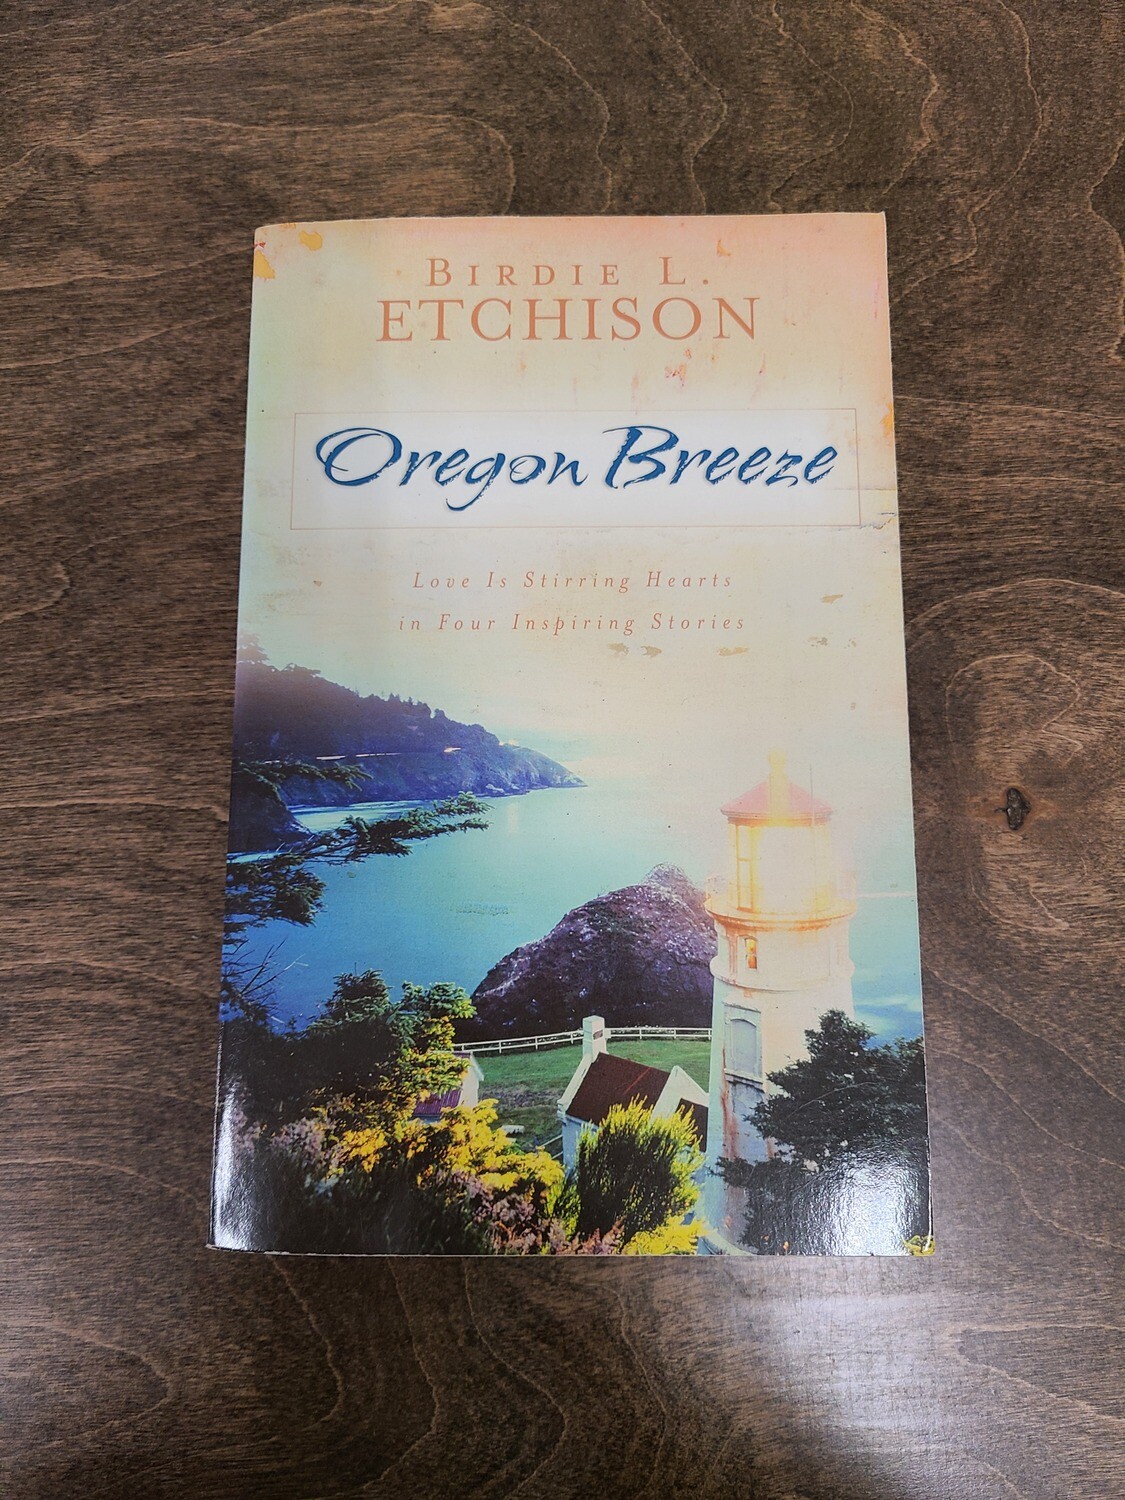 Oregon Breeze by Birdie L. Etchison